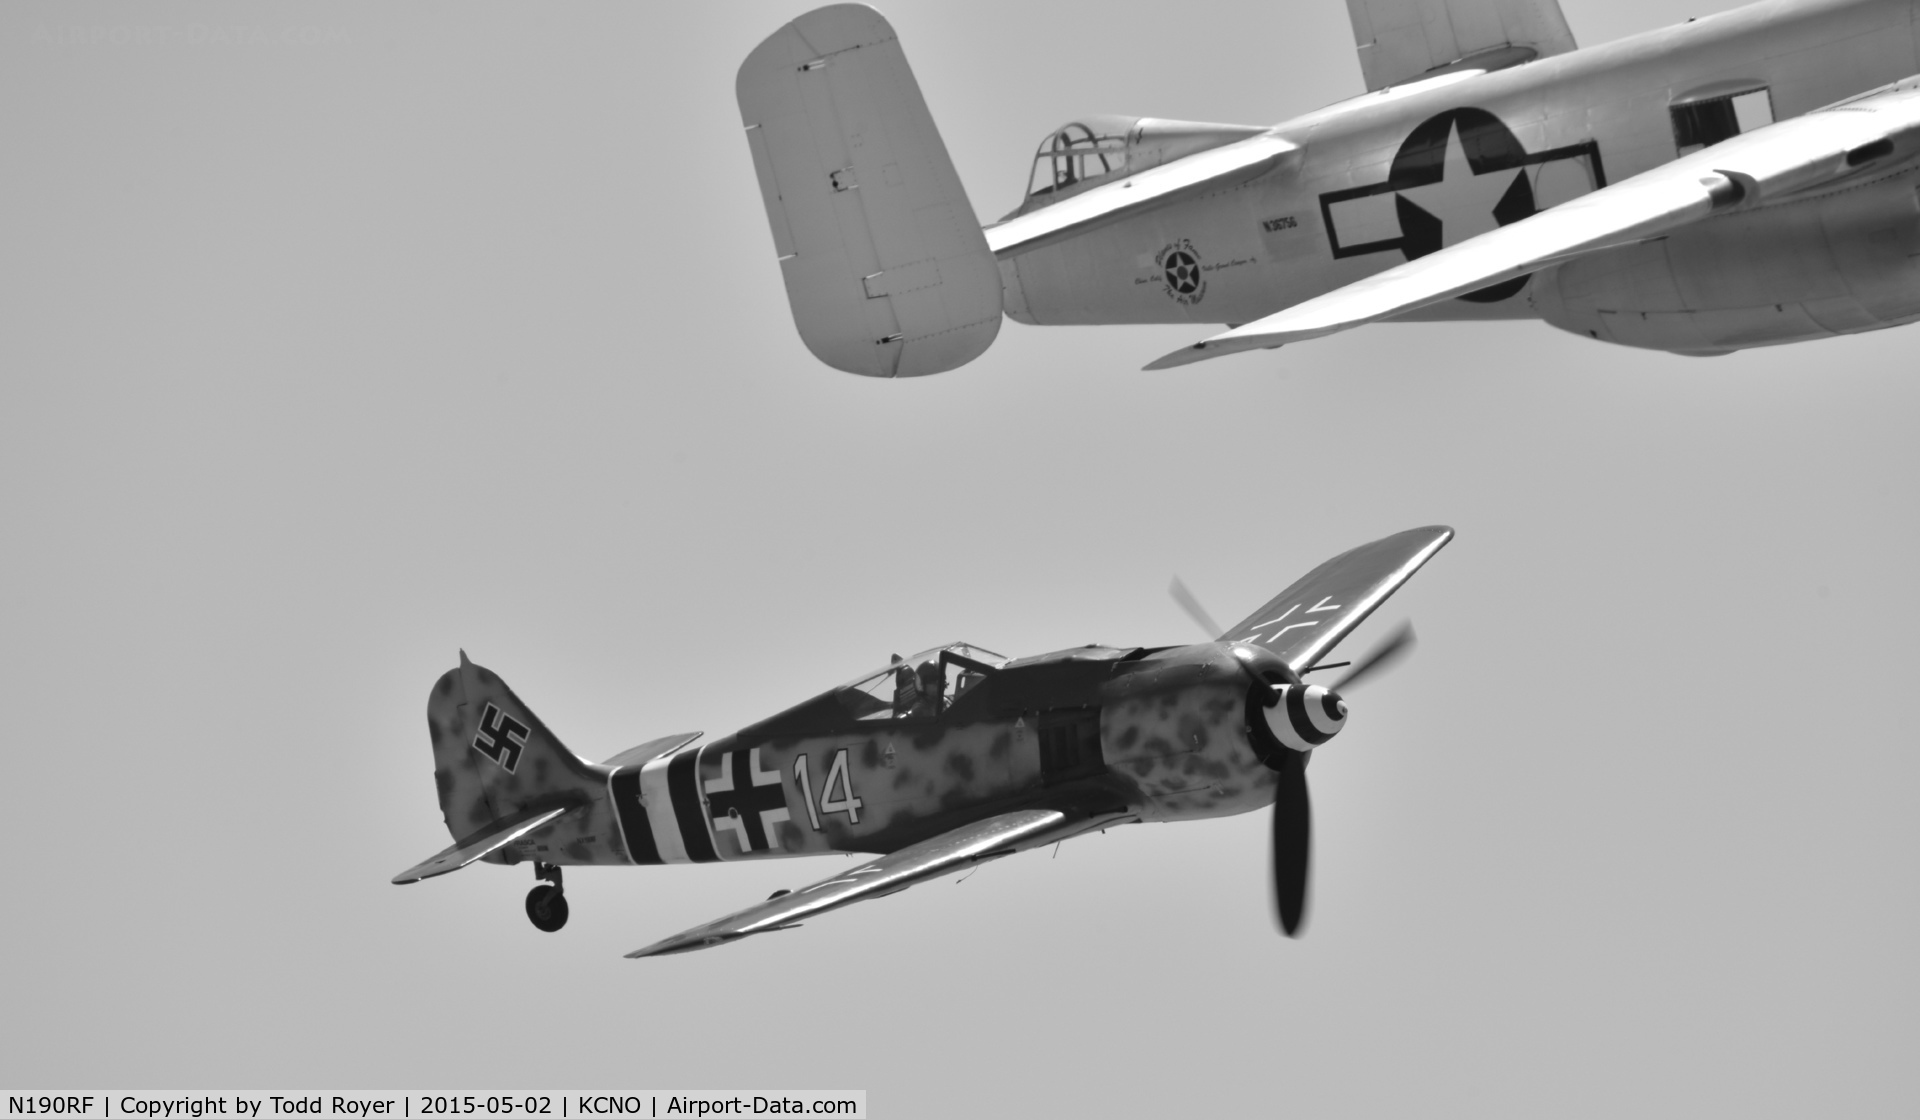 N190RF, Focke-Wulf Fw-190A-9 C/N 980 574, Planes of fame airshow